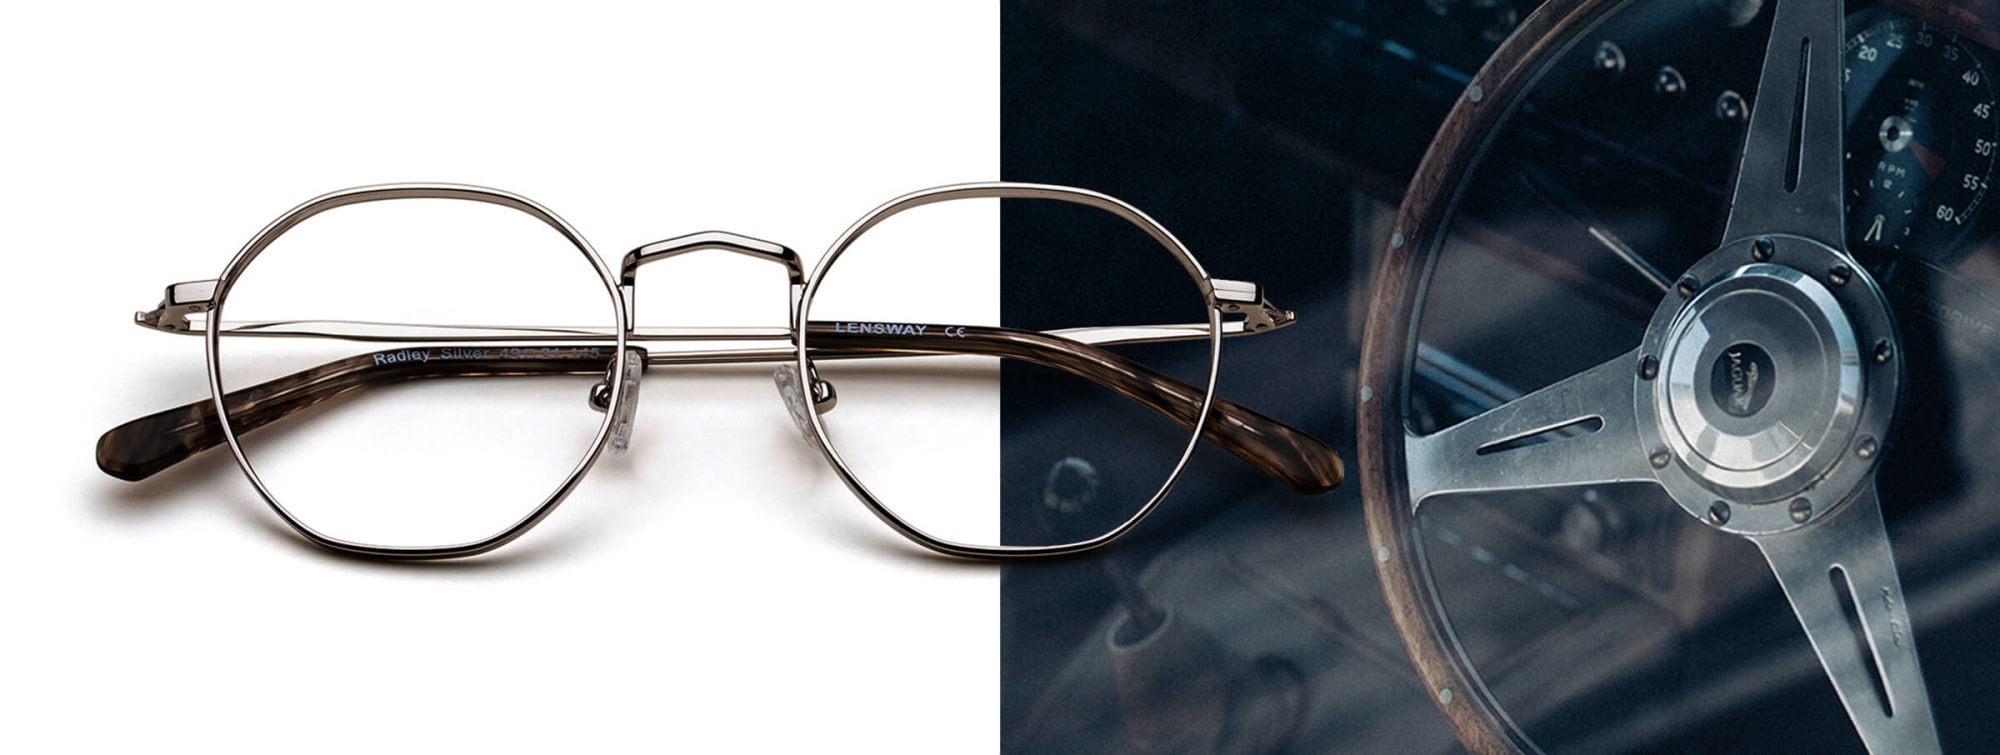 Bilde av klassiske briller med tidløs design.